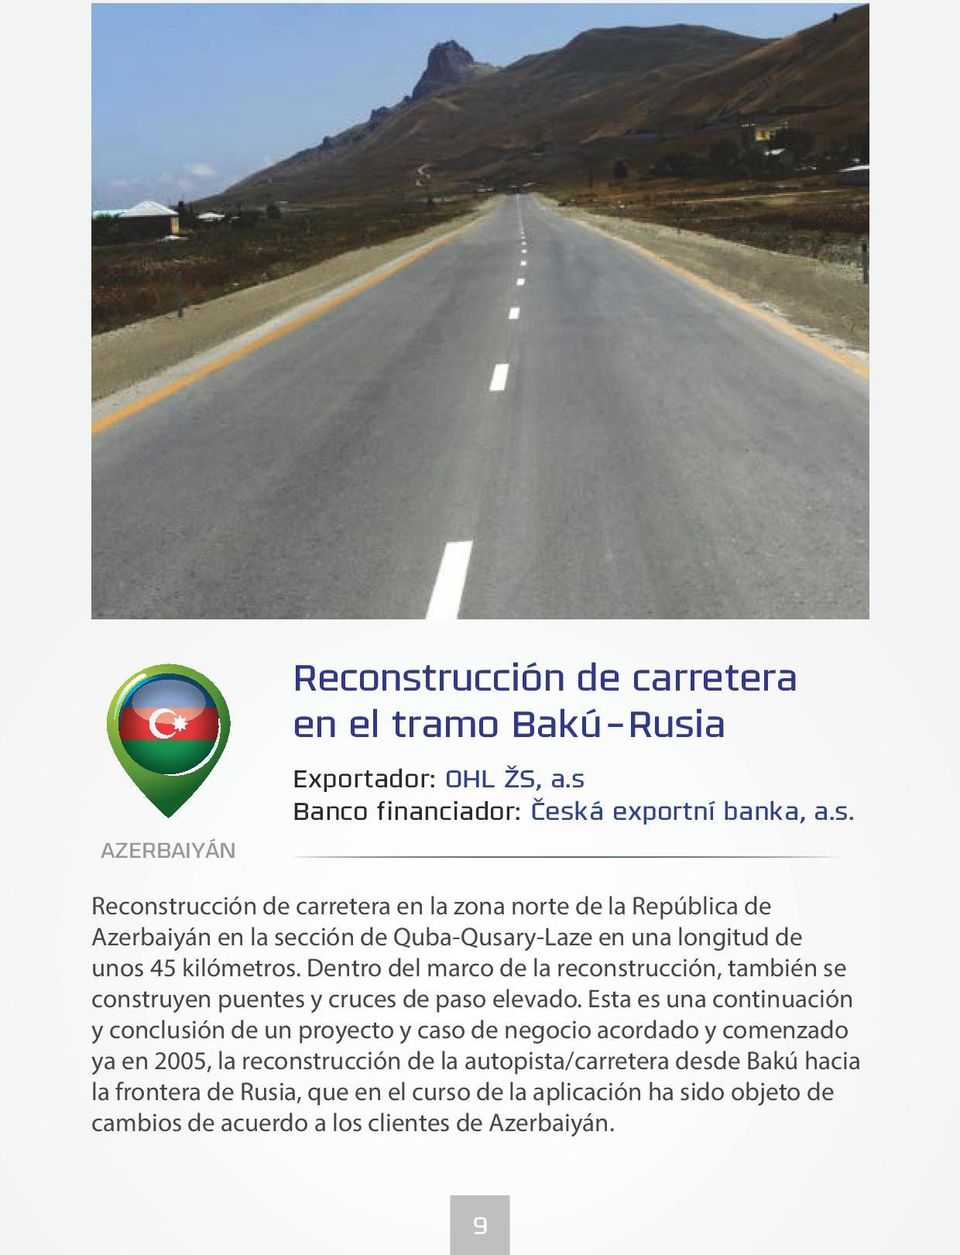 Esta es una continuación y conclusión de un proyecto y caso de negocio acordado y comenzado ya en 2005, la reconstrucción de la autopista/carretera desde Bakú hacia